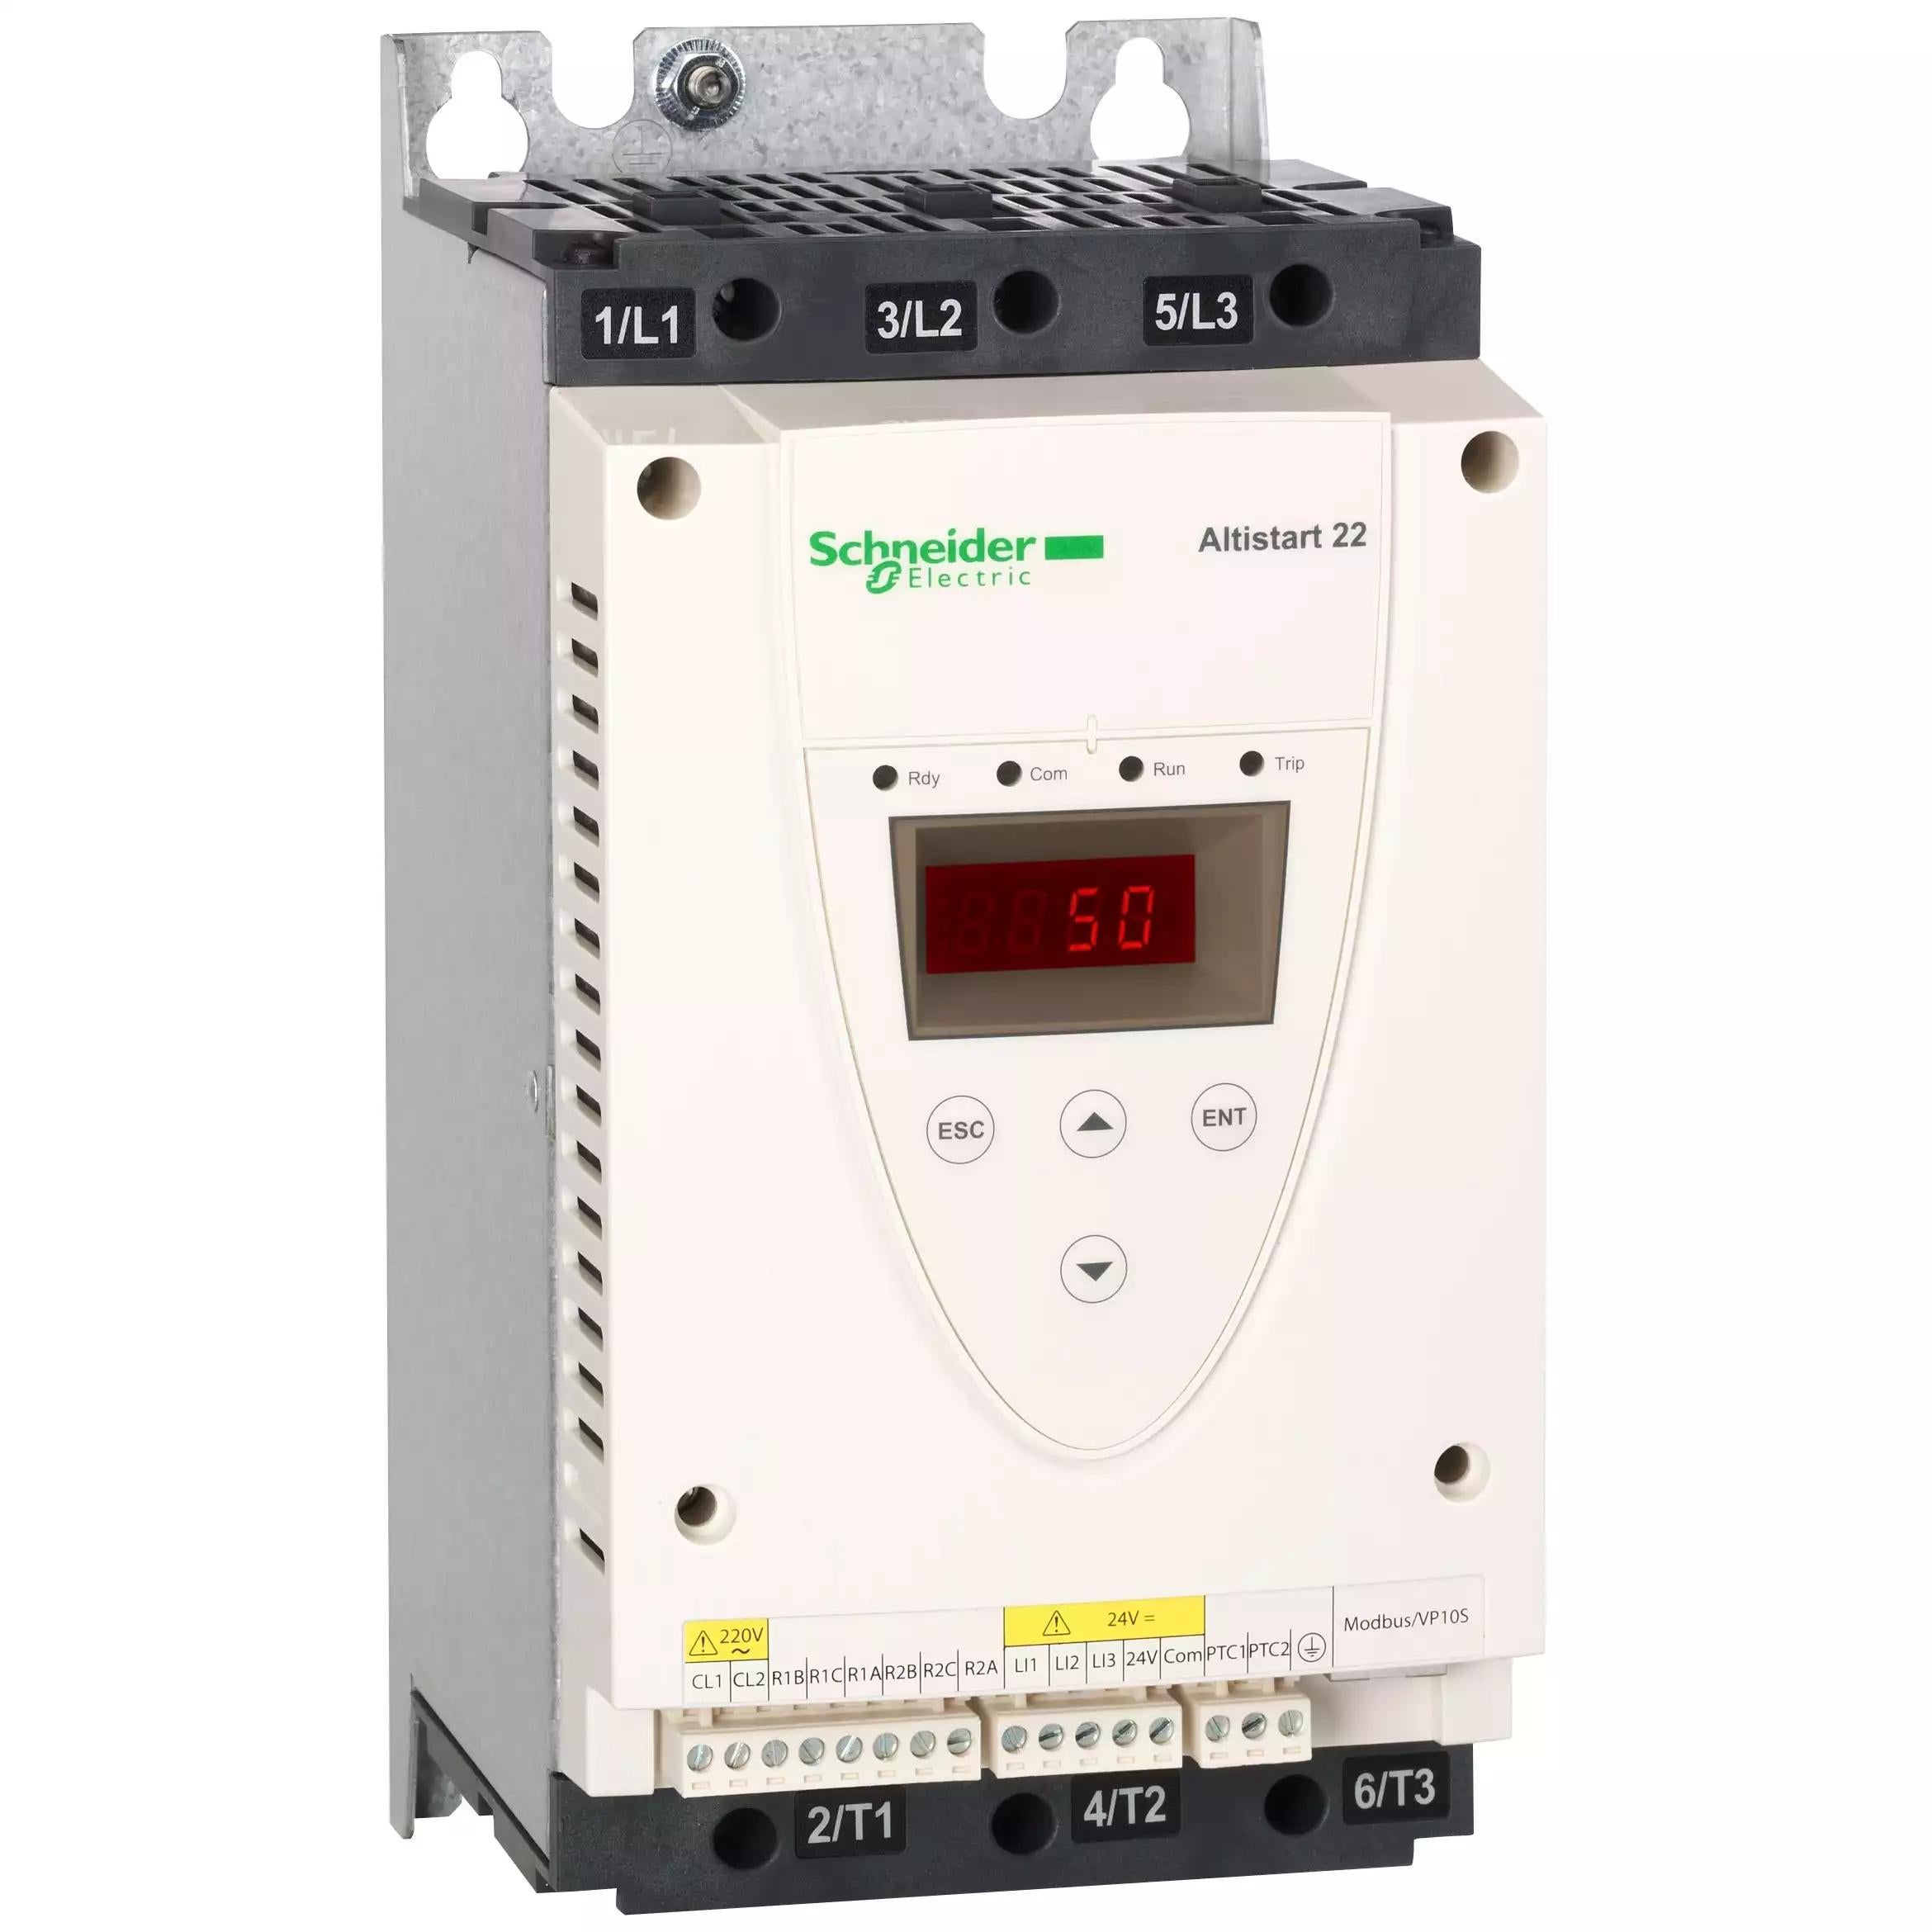 soft starter-ATS22-control 220V-power 230V(11kW)/400...440V(22kW)